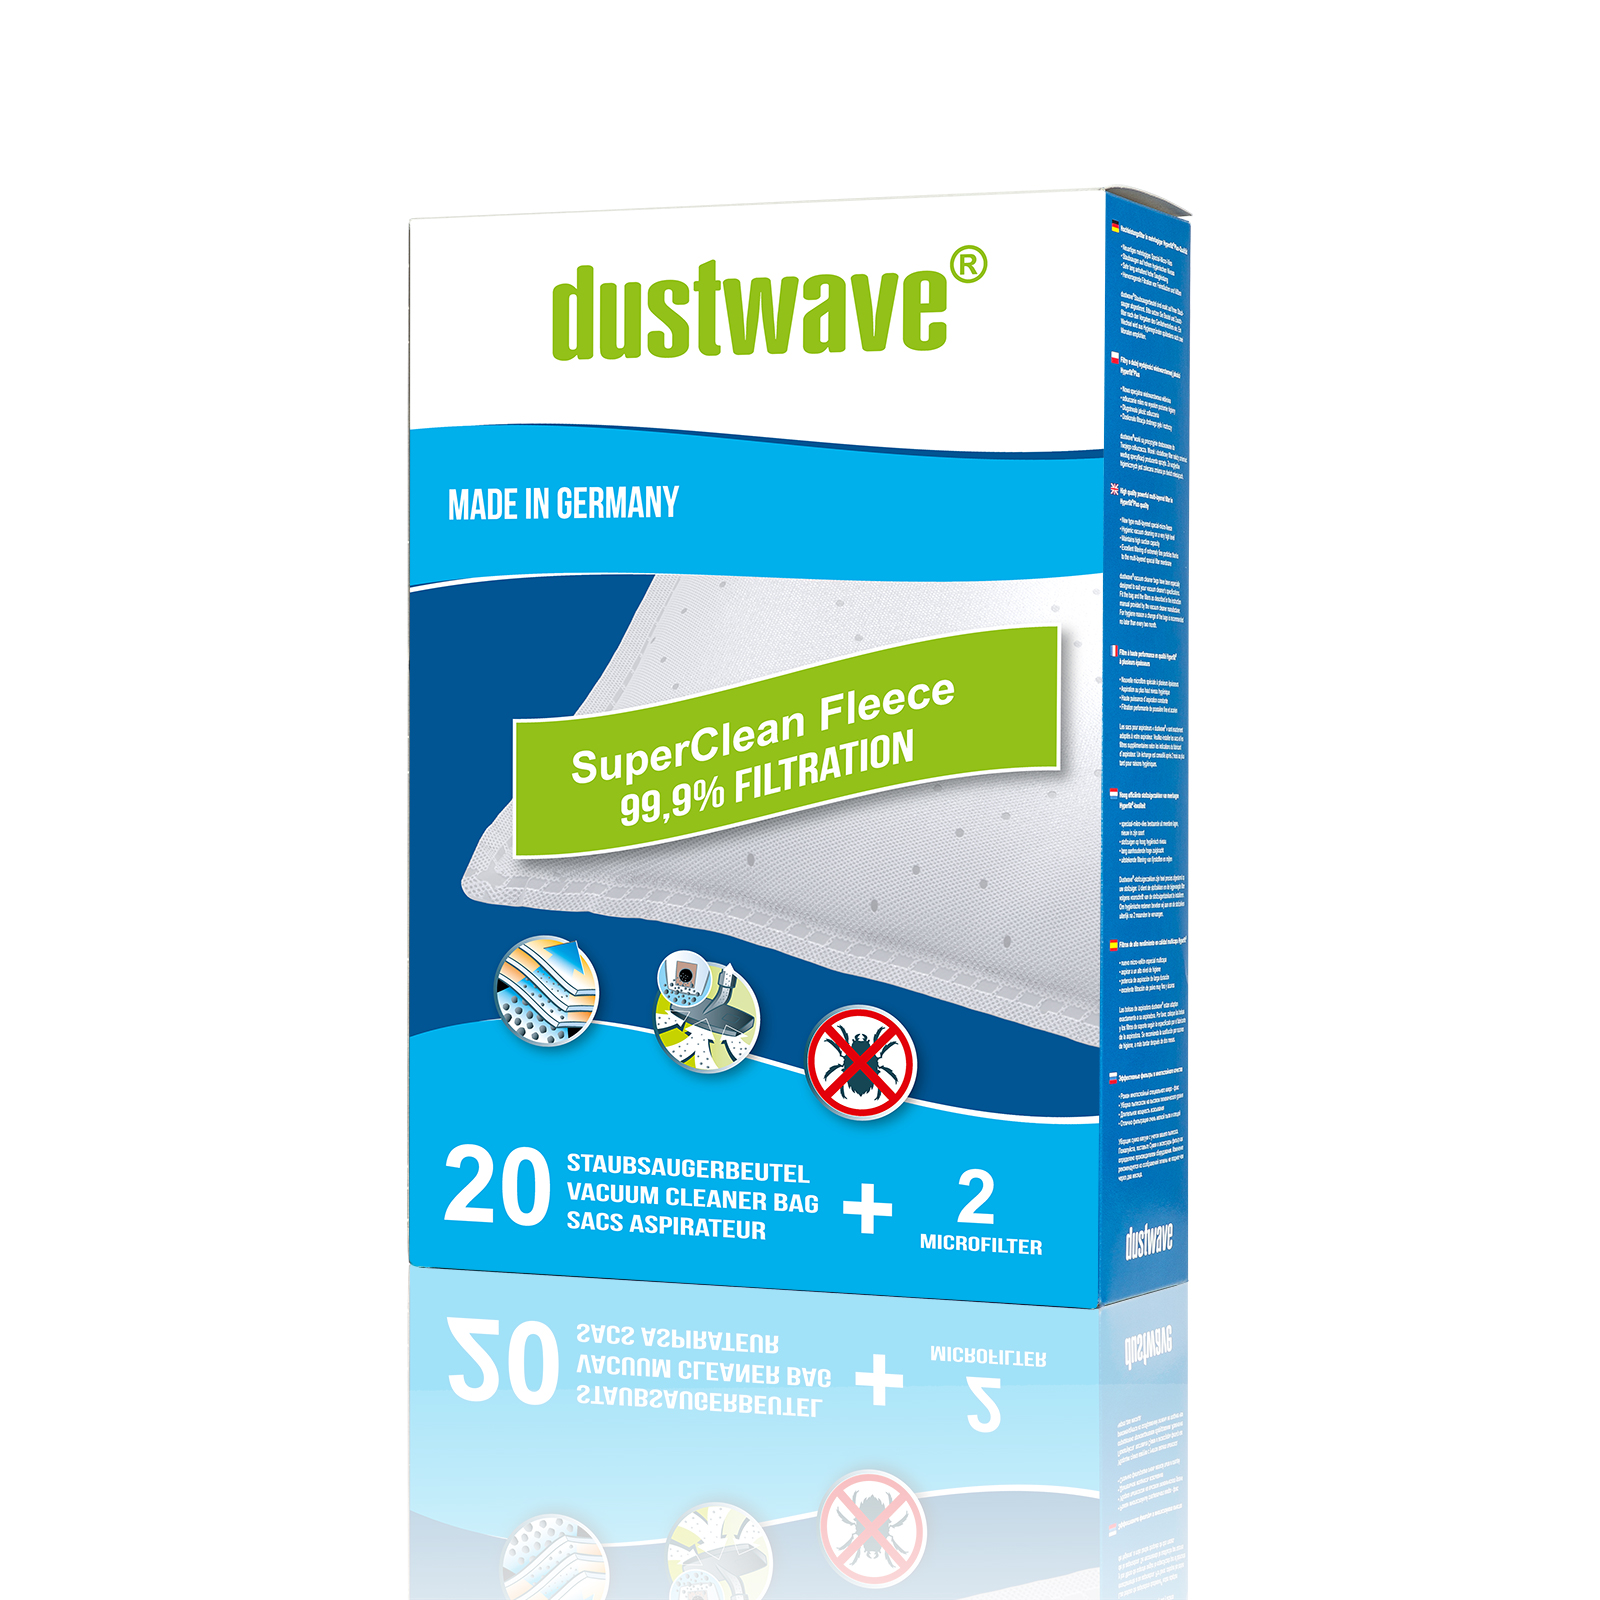 Dustwave® 1 Staubsaugerbeutel für Luxor LVC 3100 R / LVC3100R - hocheffizient, mehrlagiges Mikrovlies mit Hygieneverschluss - Made in Germany